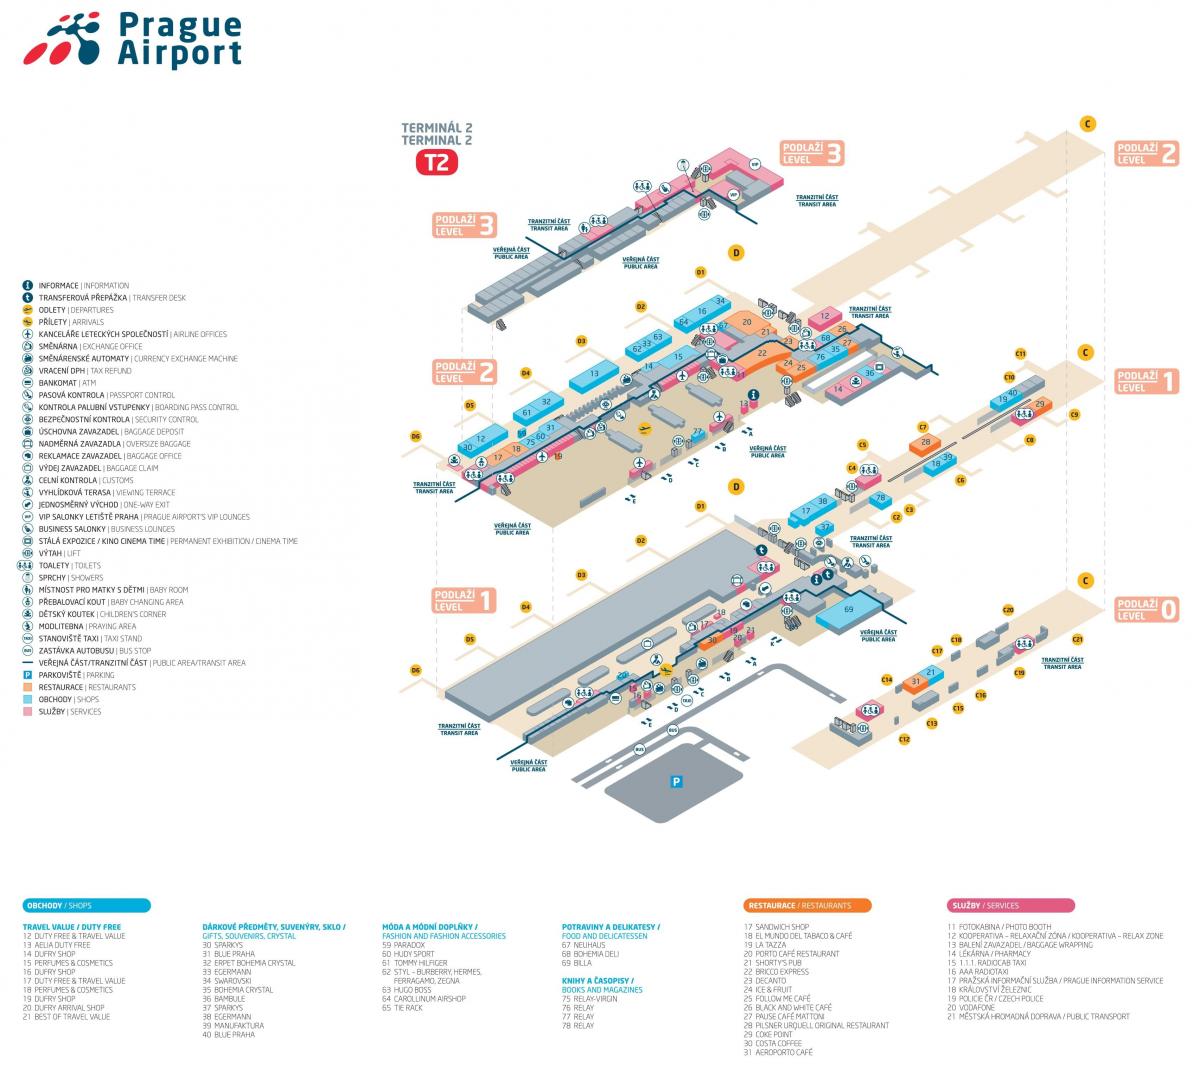 la carte de prague terminal 2 de l'aéroport